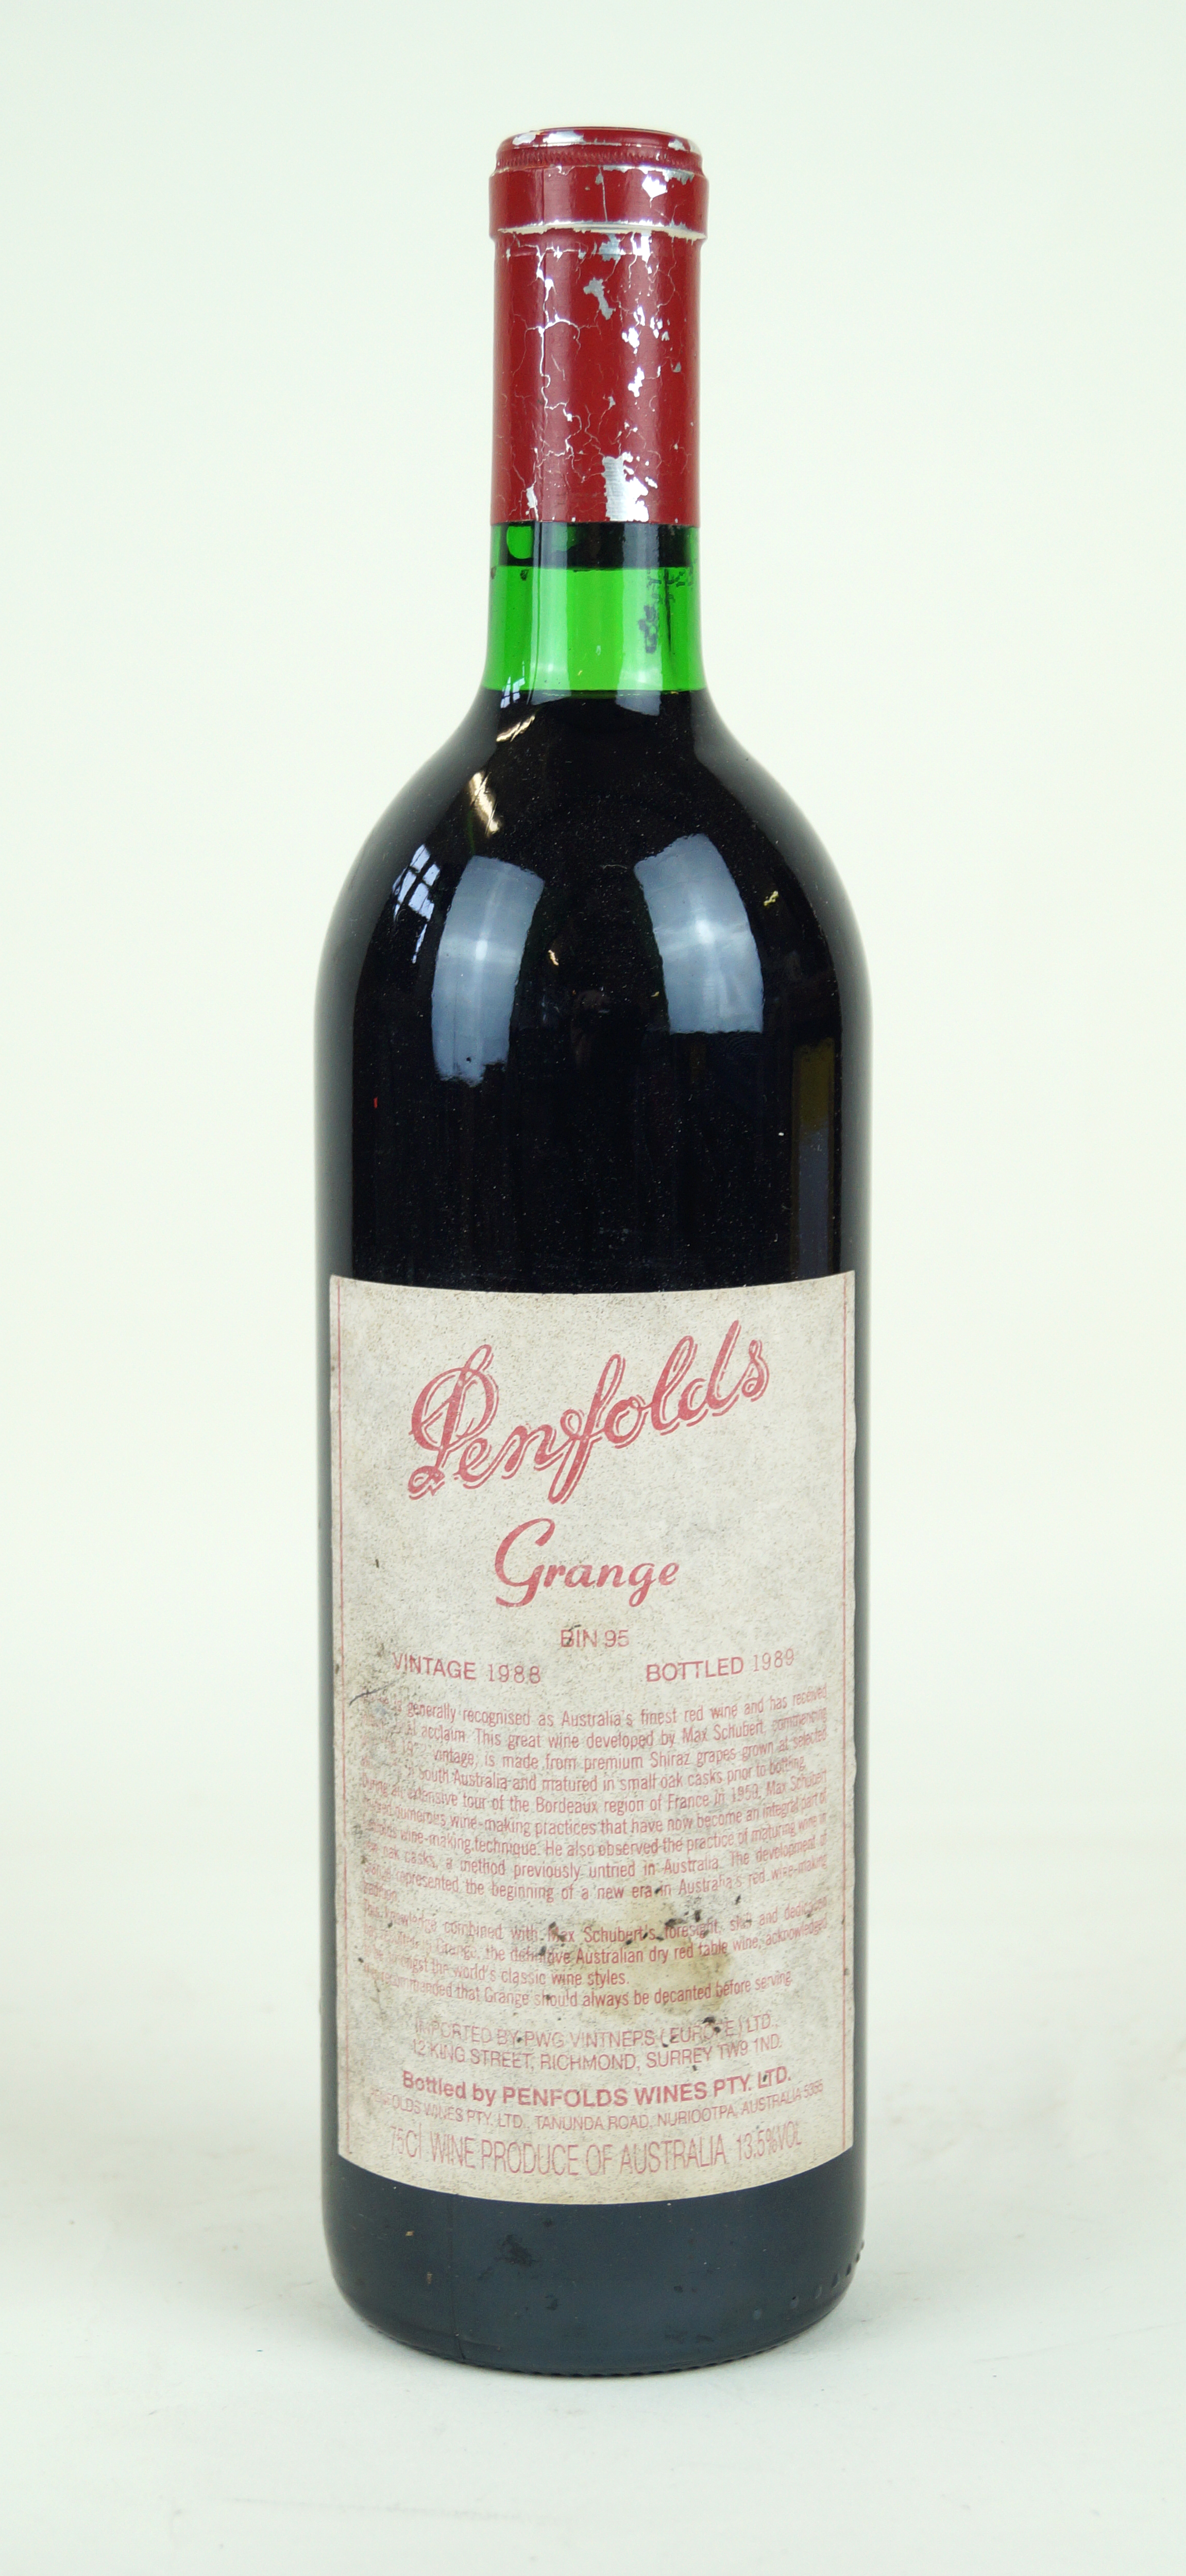 1 bottle Penfolds 'Grange' Bin 95 Vintage 1988 (b/n) some cellar damage to label